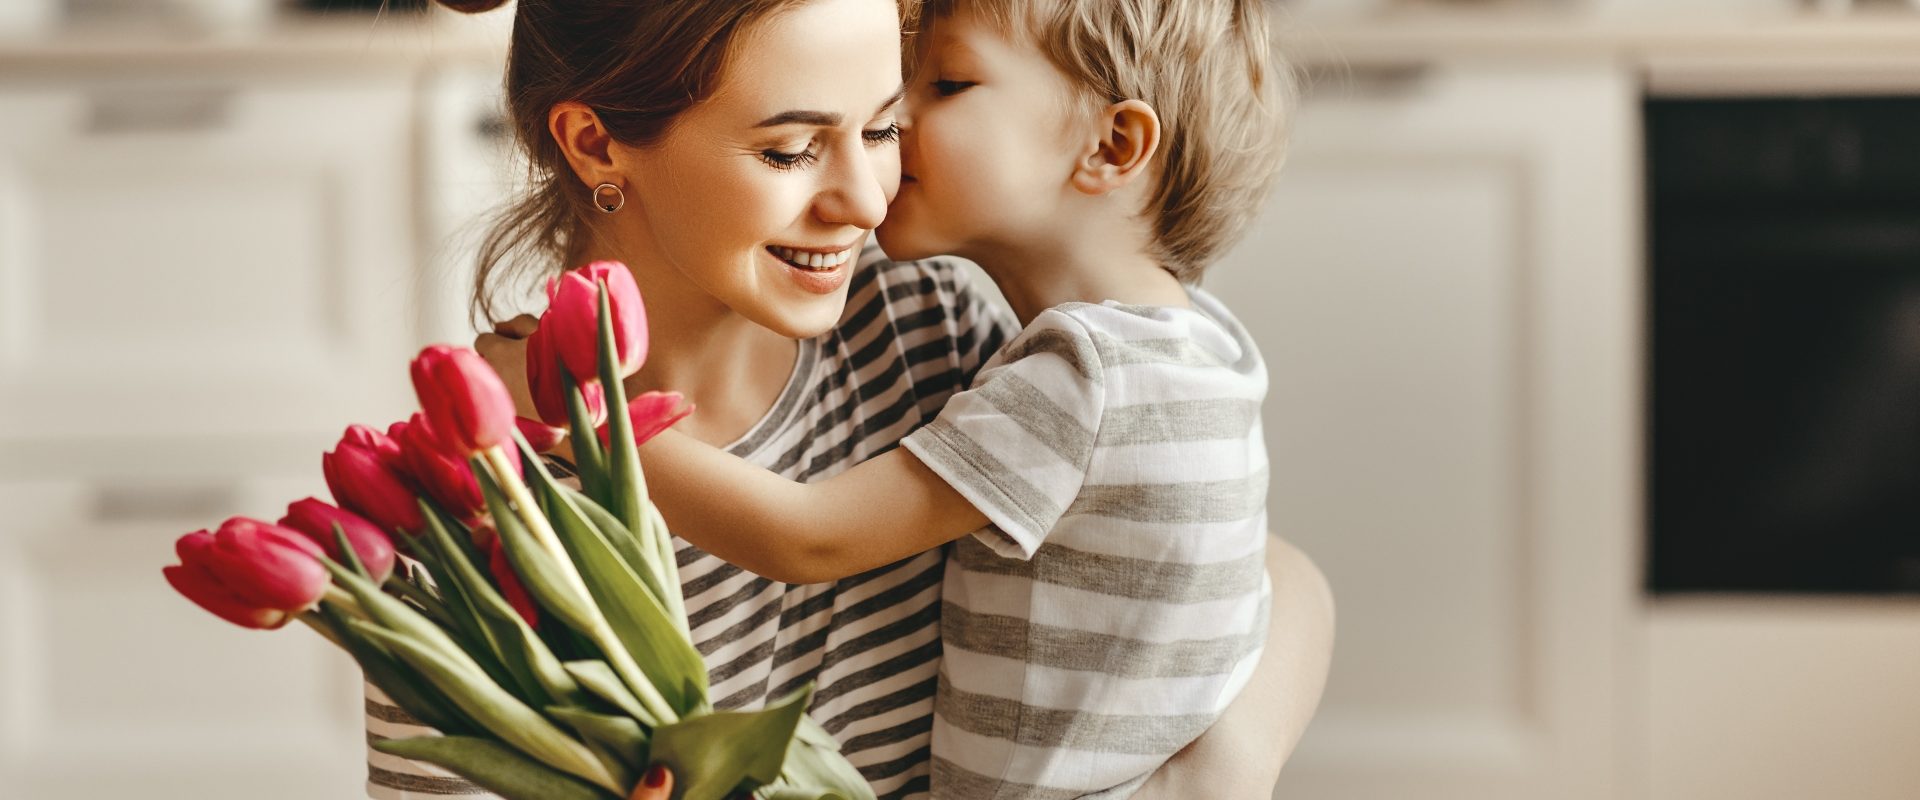 Naturalnie o miłości pisze Beata Sadowska. Synek przytula mamę i wręcza jej bukiet tulipanów w domowej kuchni.